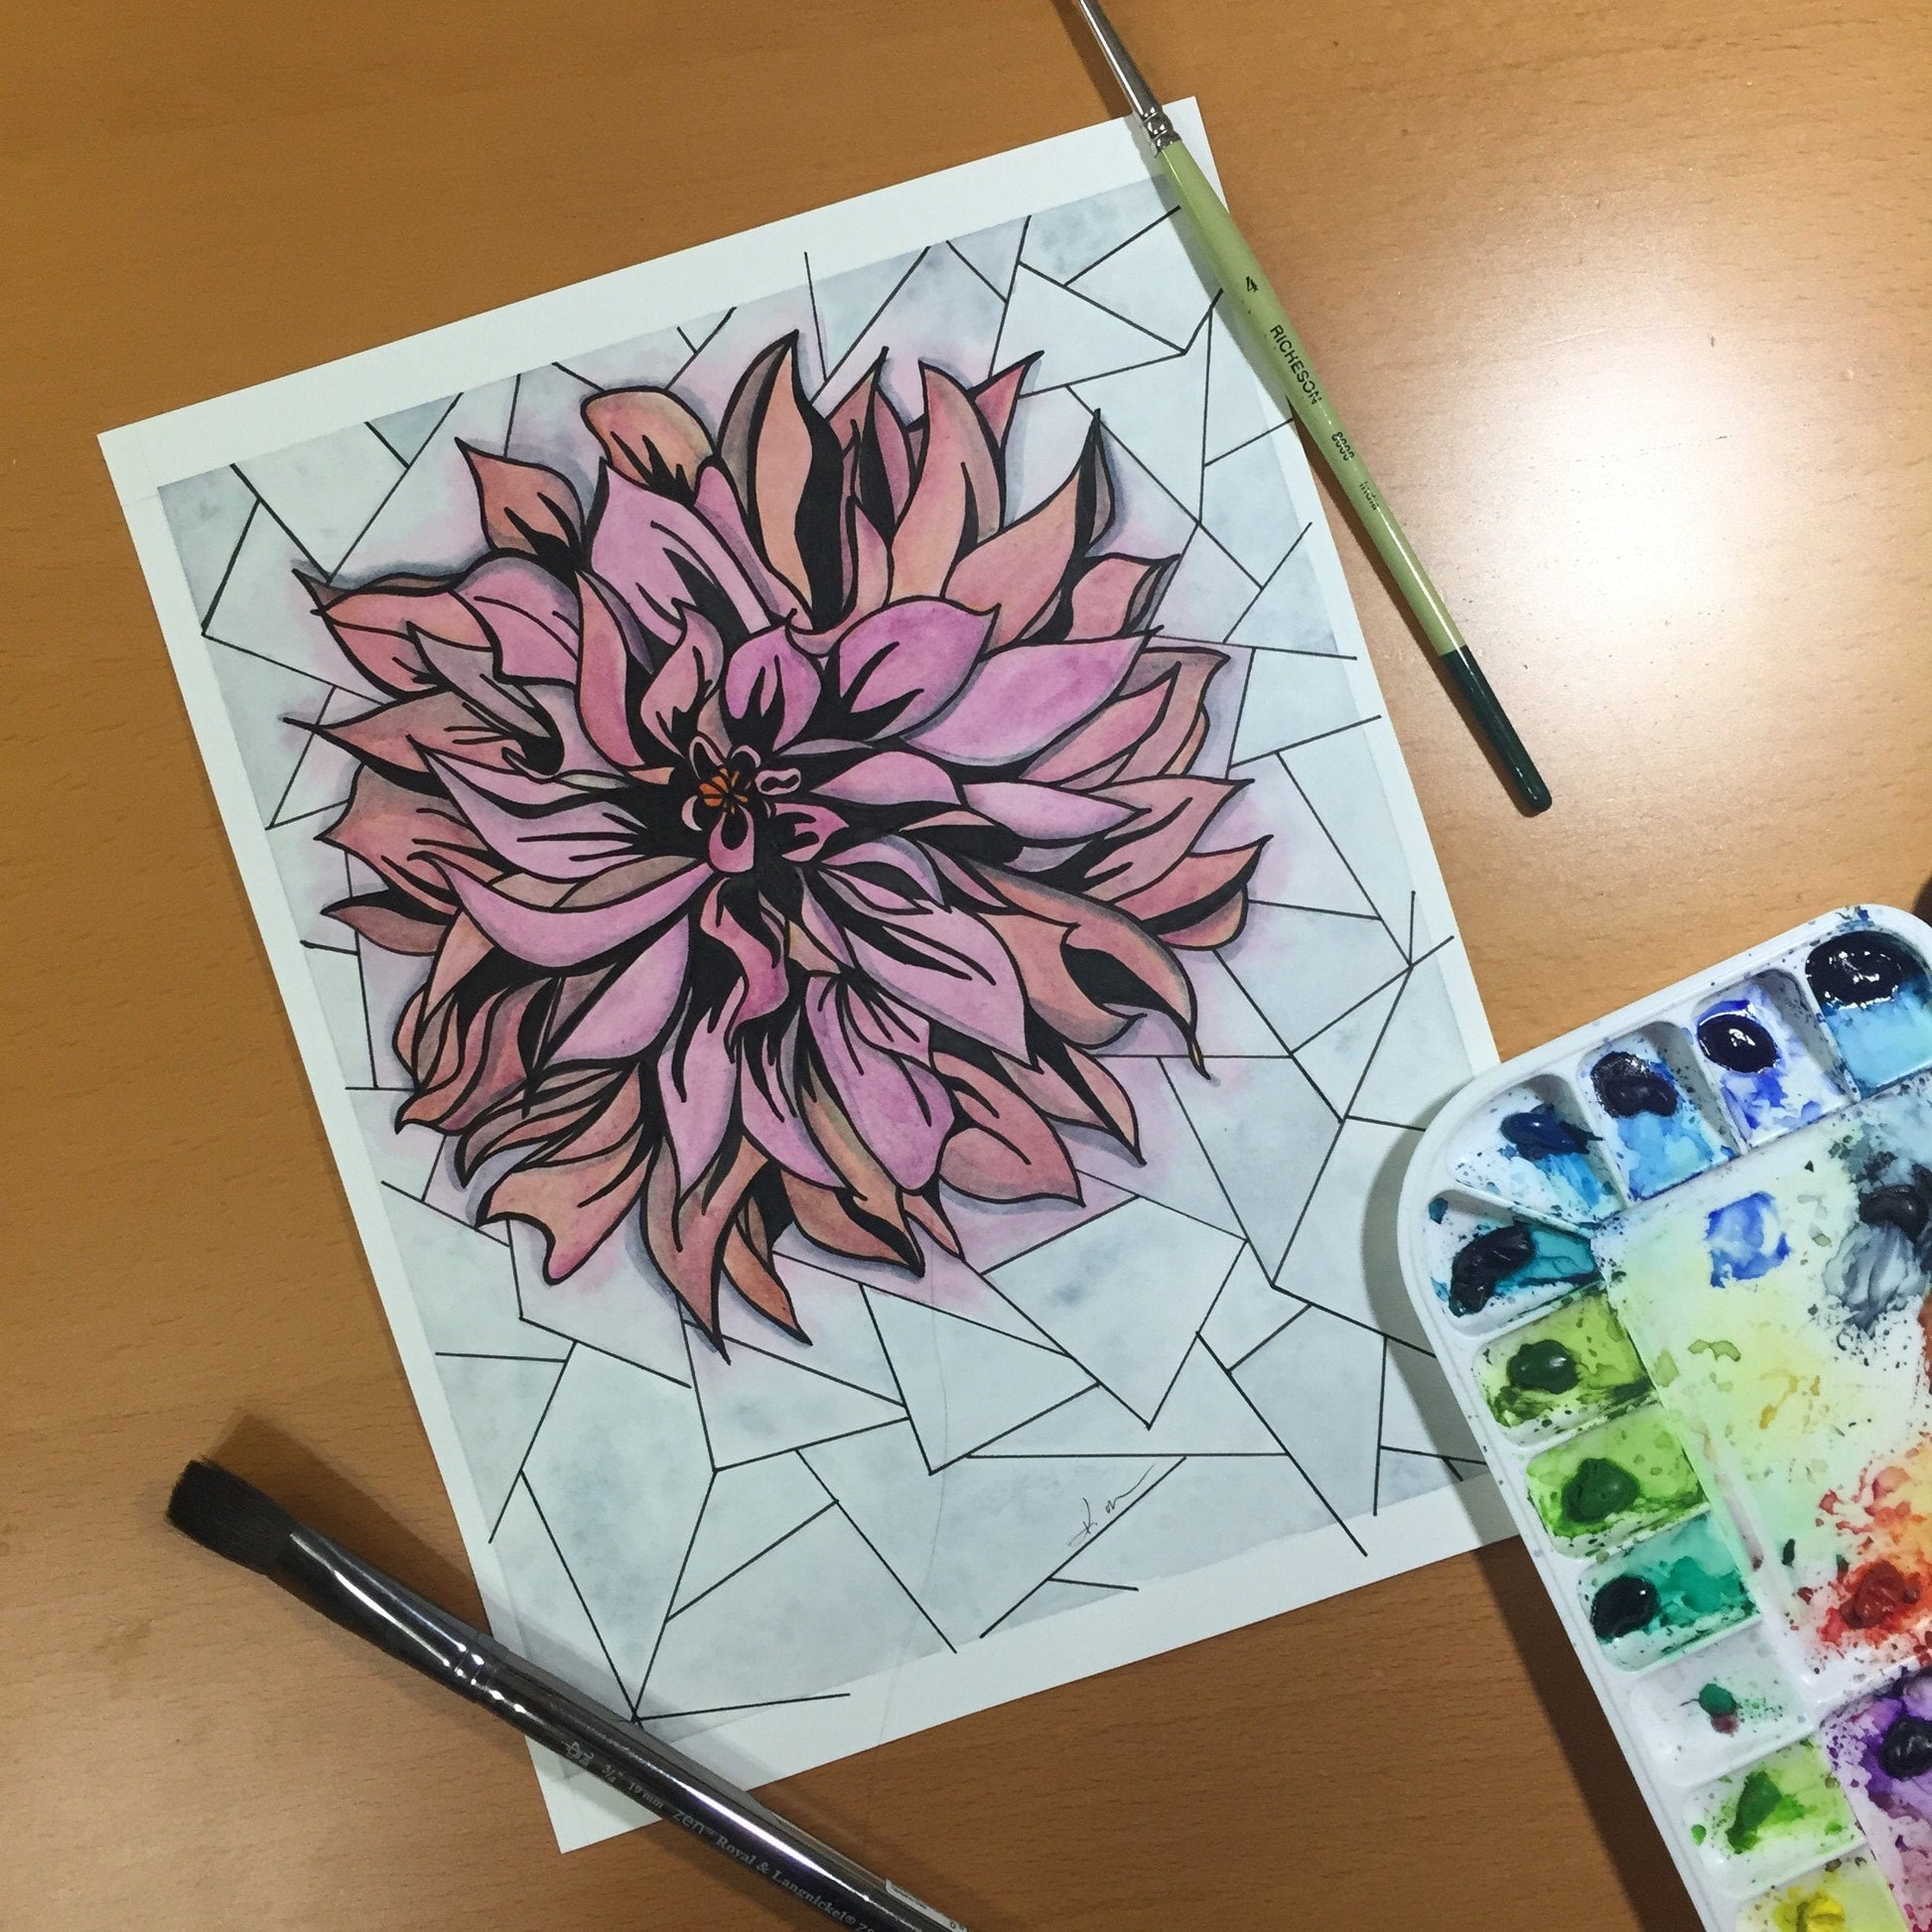 PinkPolish Design Original Art "In Bloom"  Chrysanthemum Inspired Original Watercolor & Ink Illustration